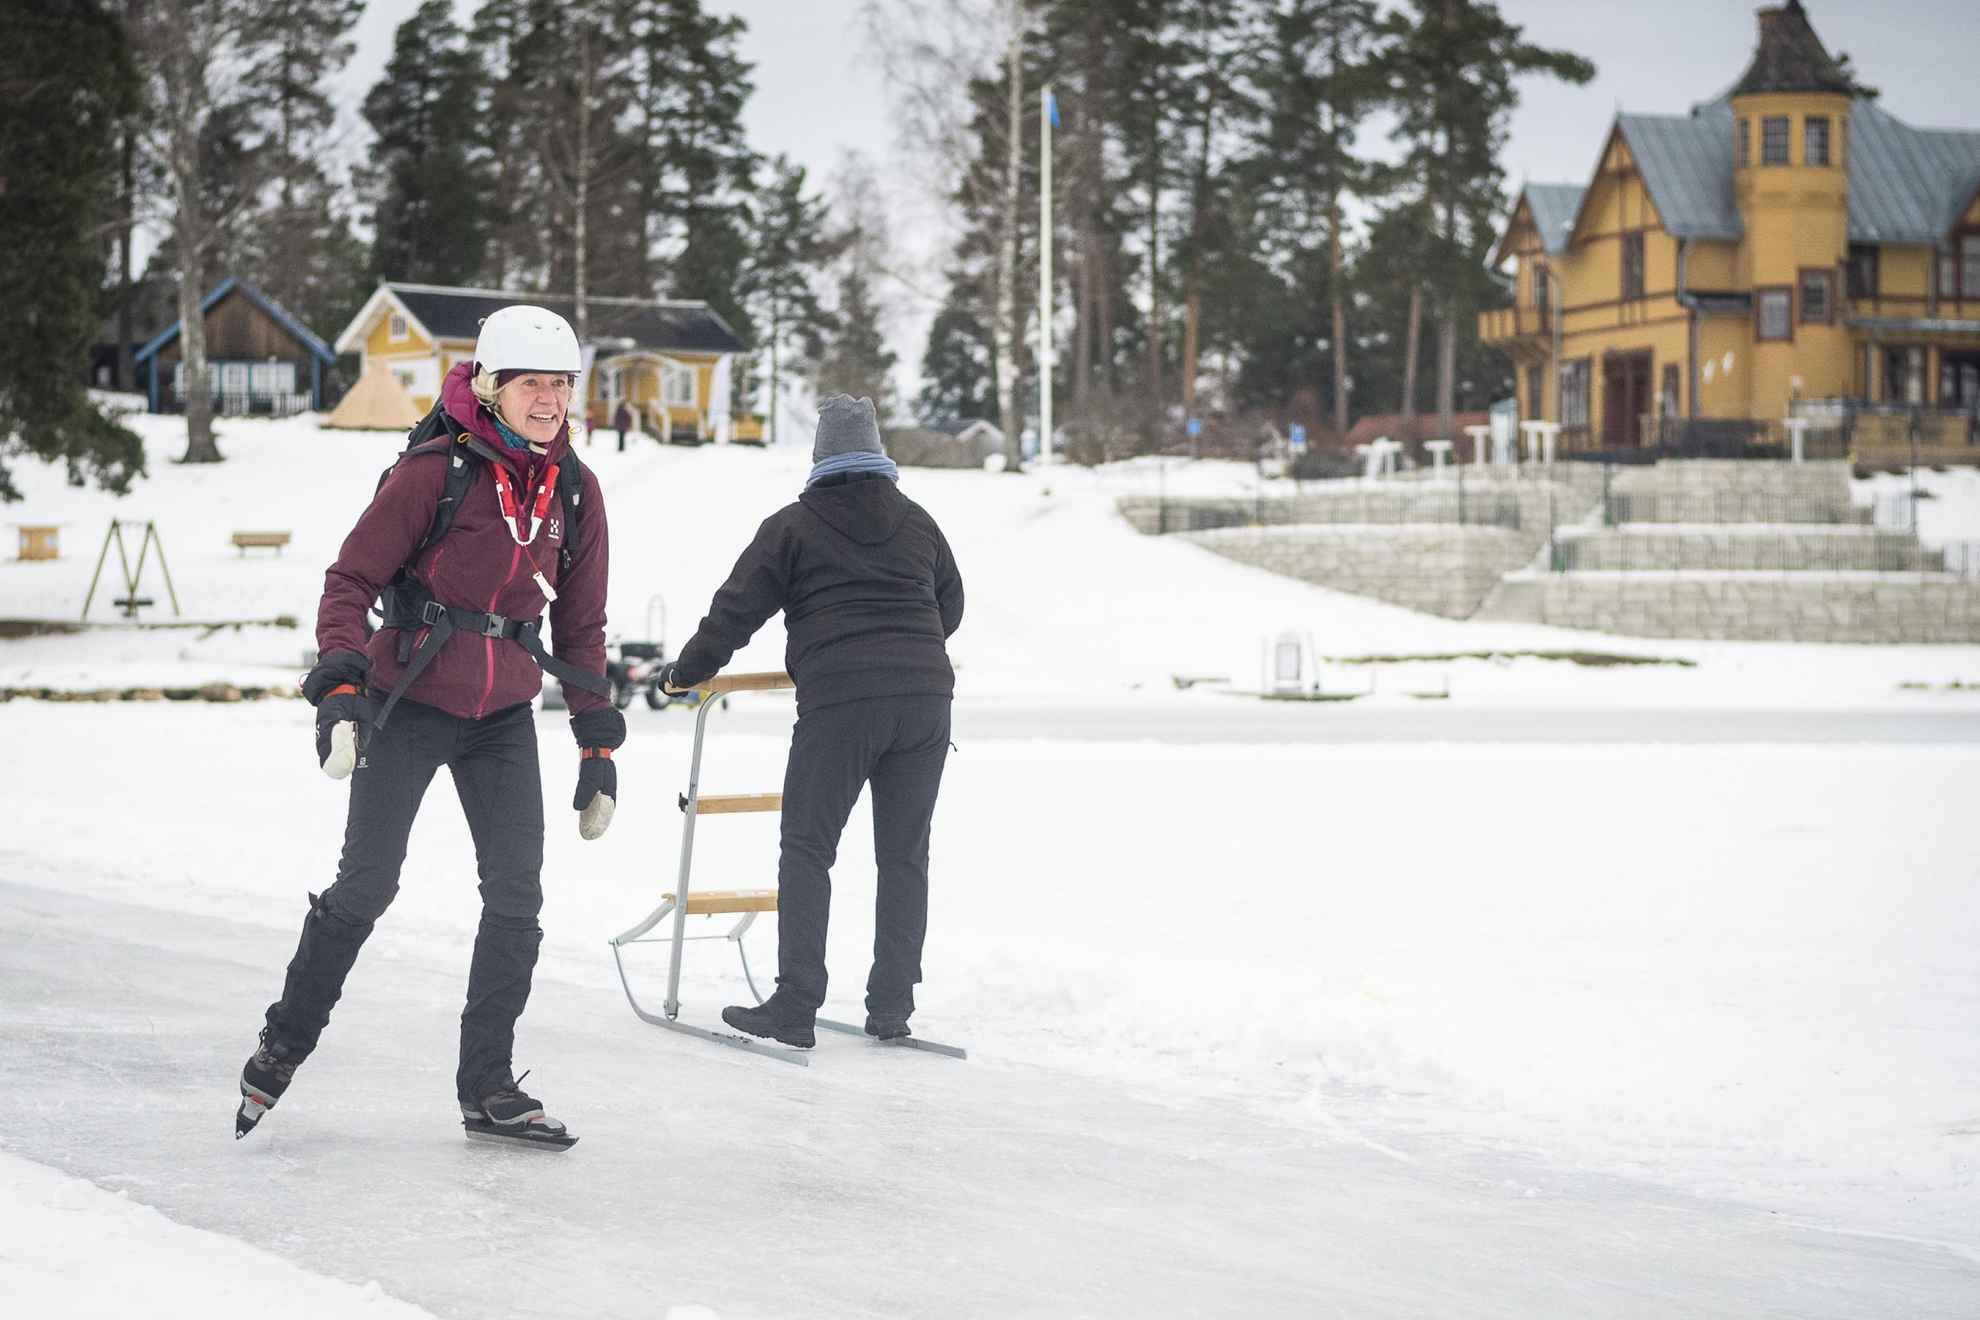 Een vrouw schaatst lange afstanden terwijl een andere persoon achter haar een slee op het ijs duwt.